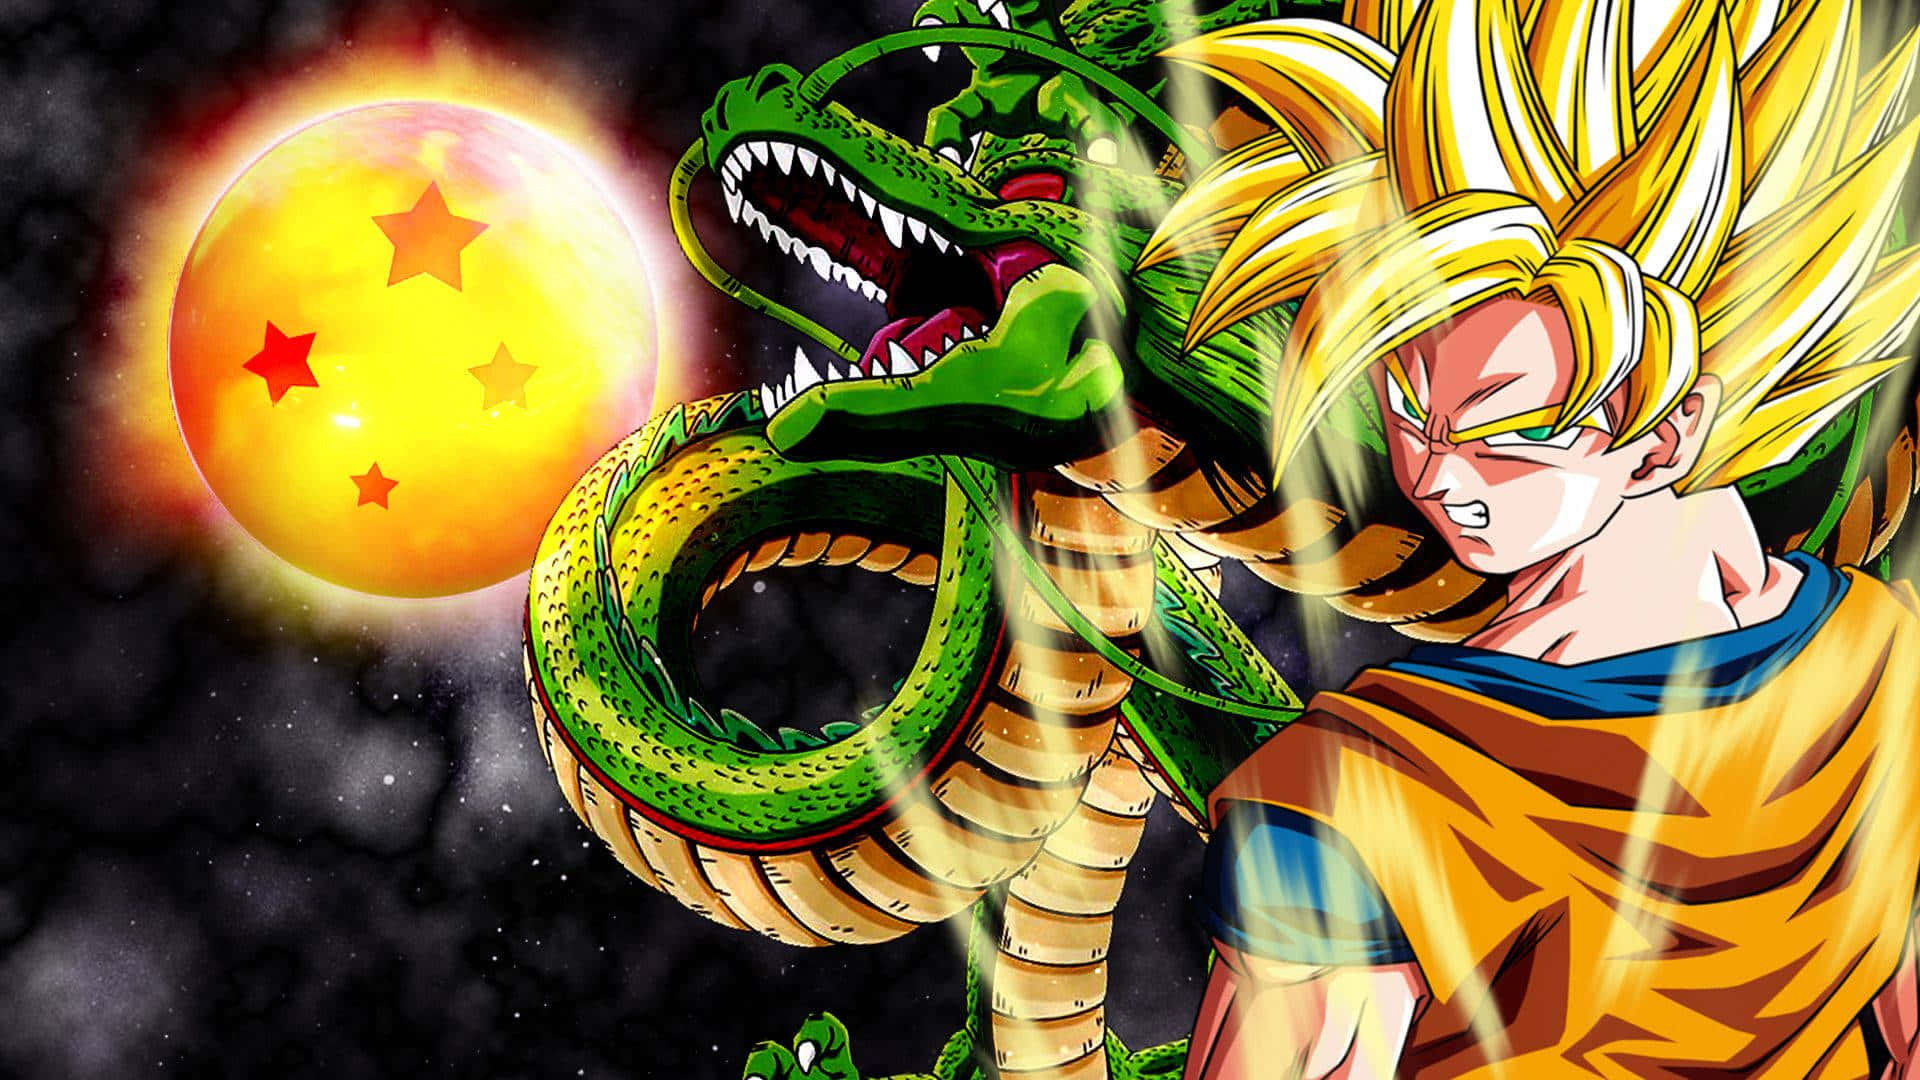 Goku løftes magten i Kamehameha i en spektakulær explosion af energi! Wallpaper